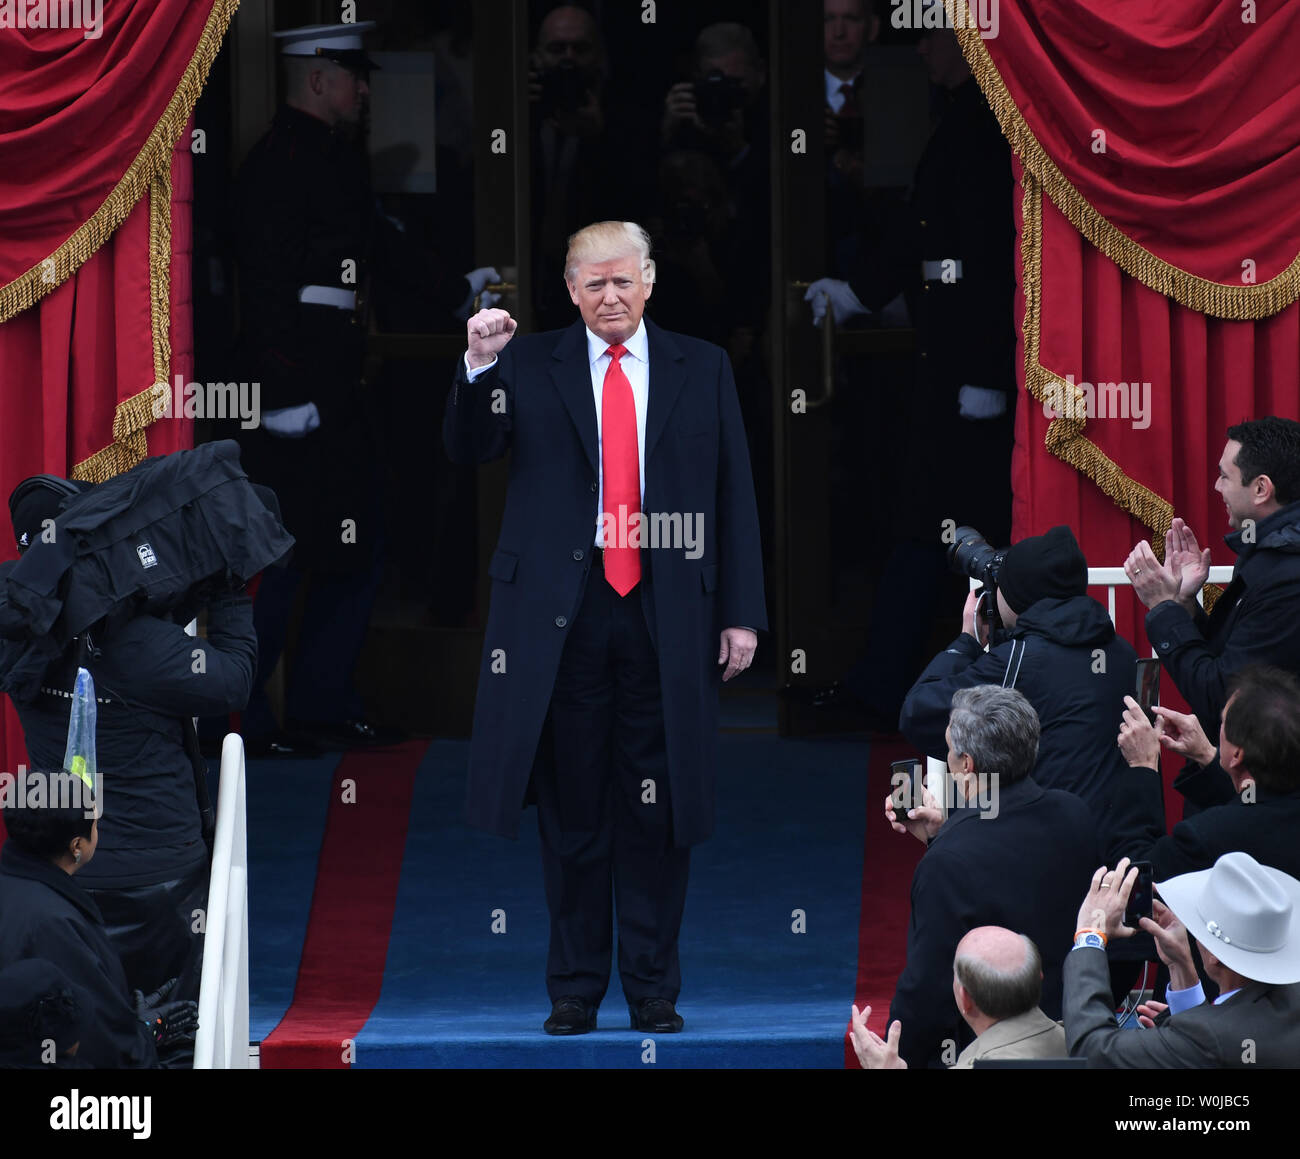 El presidente electo, Donald J. Trump llega a su toma de posesión el 20 de enero de 2017 en Washington, D.C. el triunfo se convierte en el 45º Presidente de los Estados Unidos. Foto por Pat Benic/UPI Foto de stock